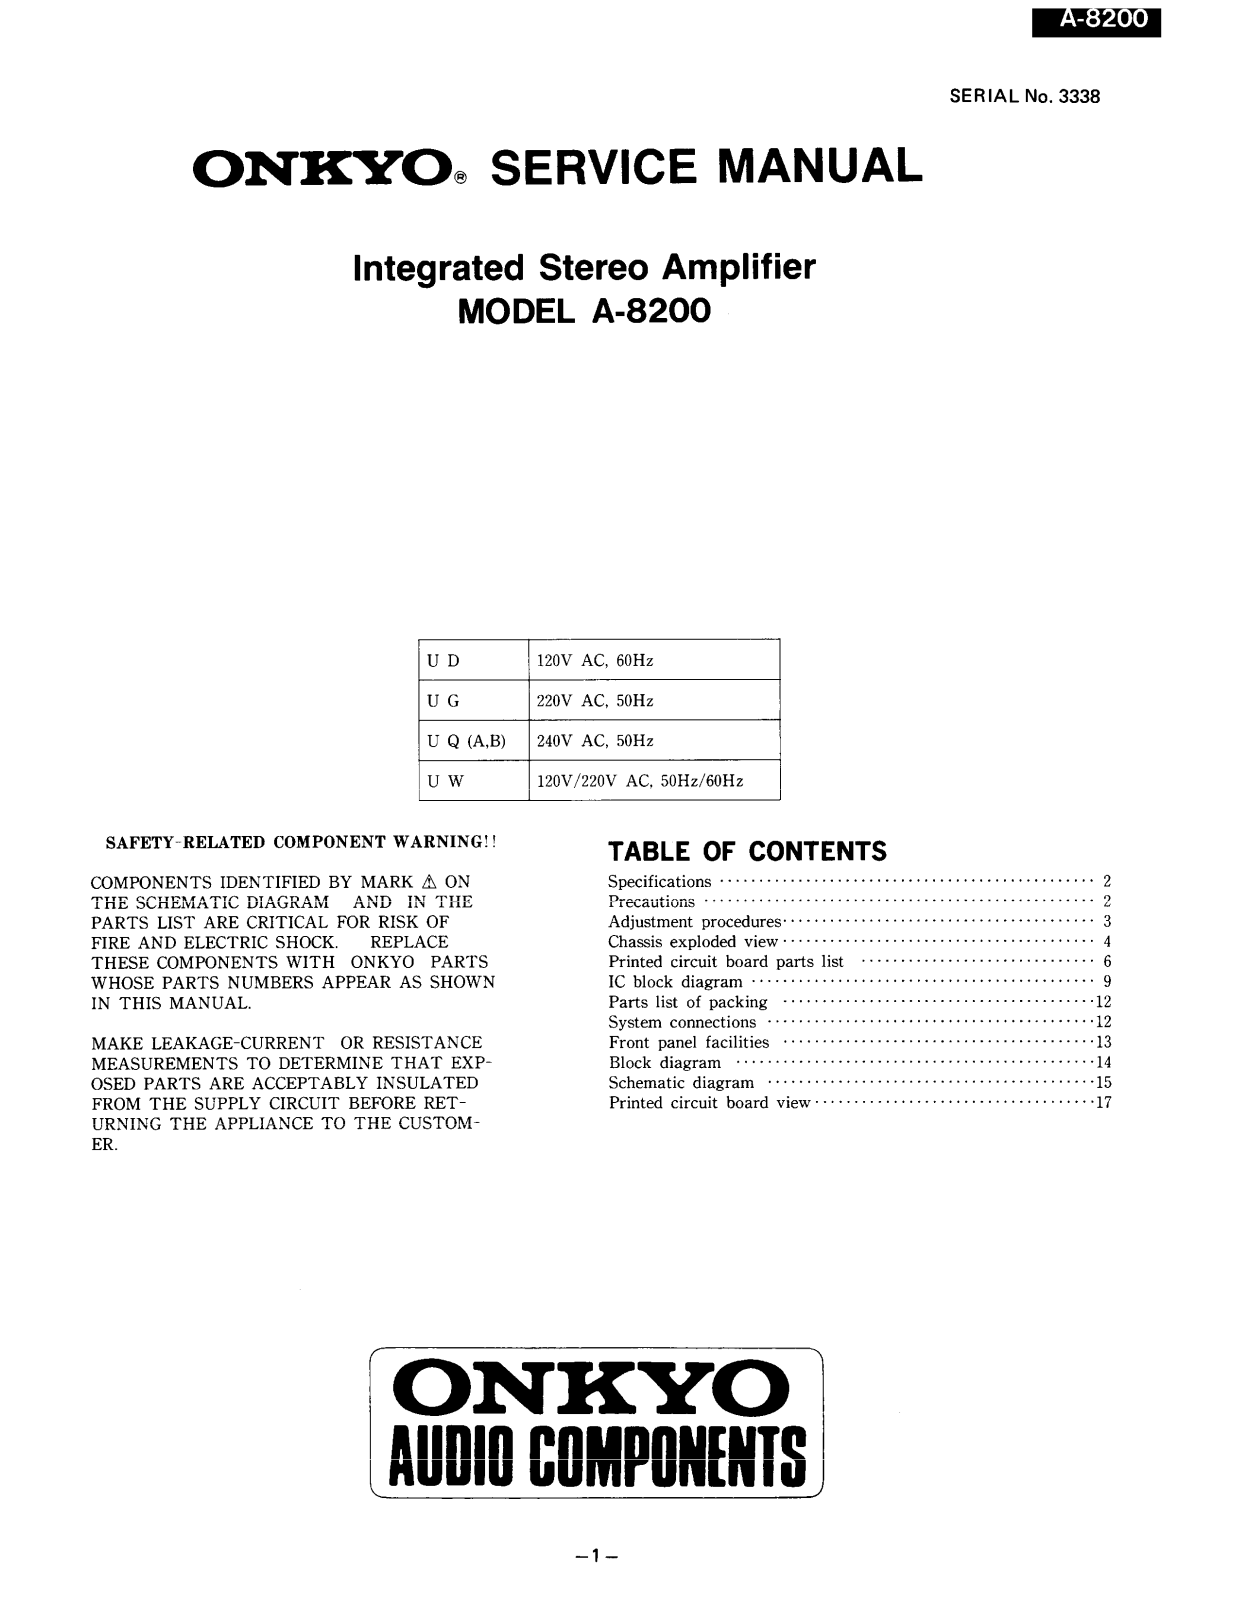 SONY A540E Service Manual